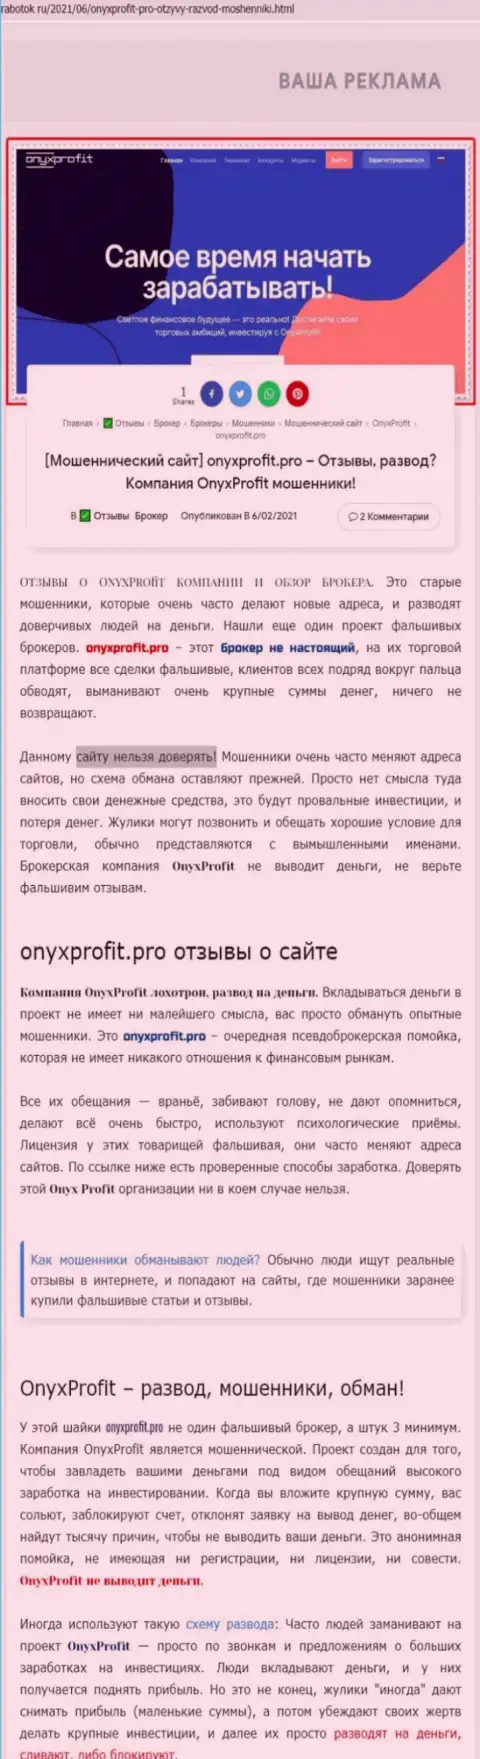 Уловки от компании OnyxProfit, обзор мошеннических действий